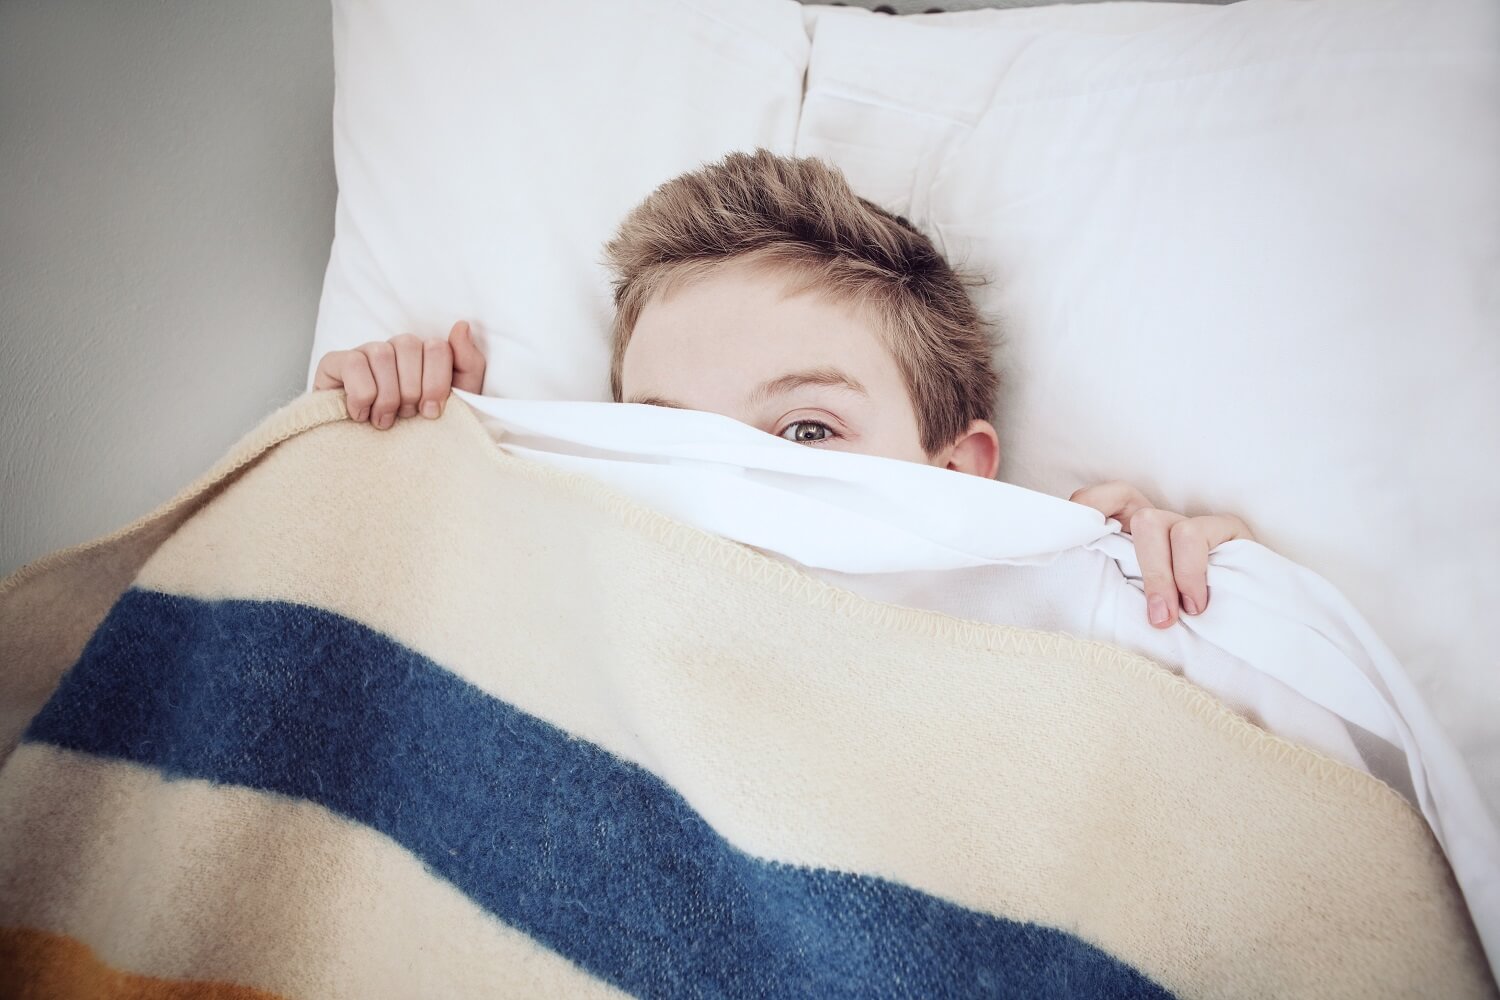 menino na cama se escondendo sob os lençóis com medo